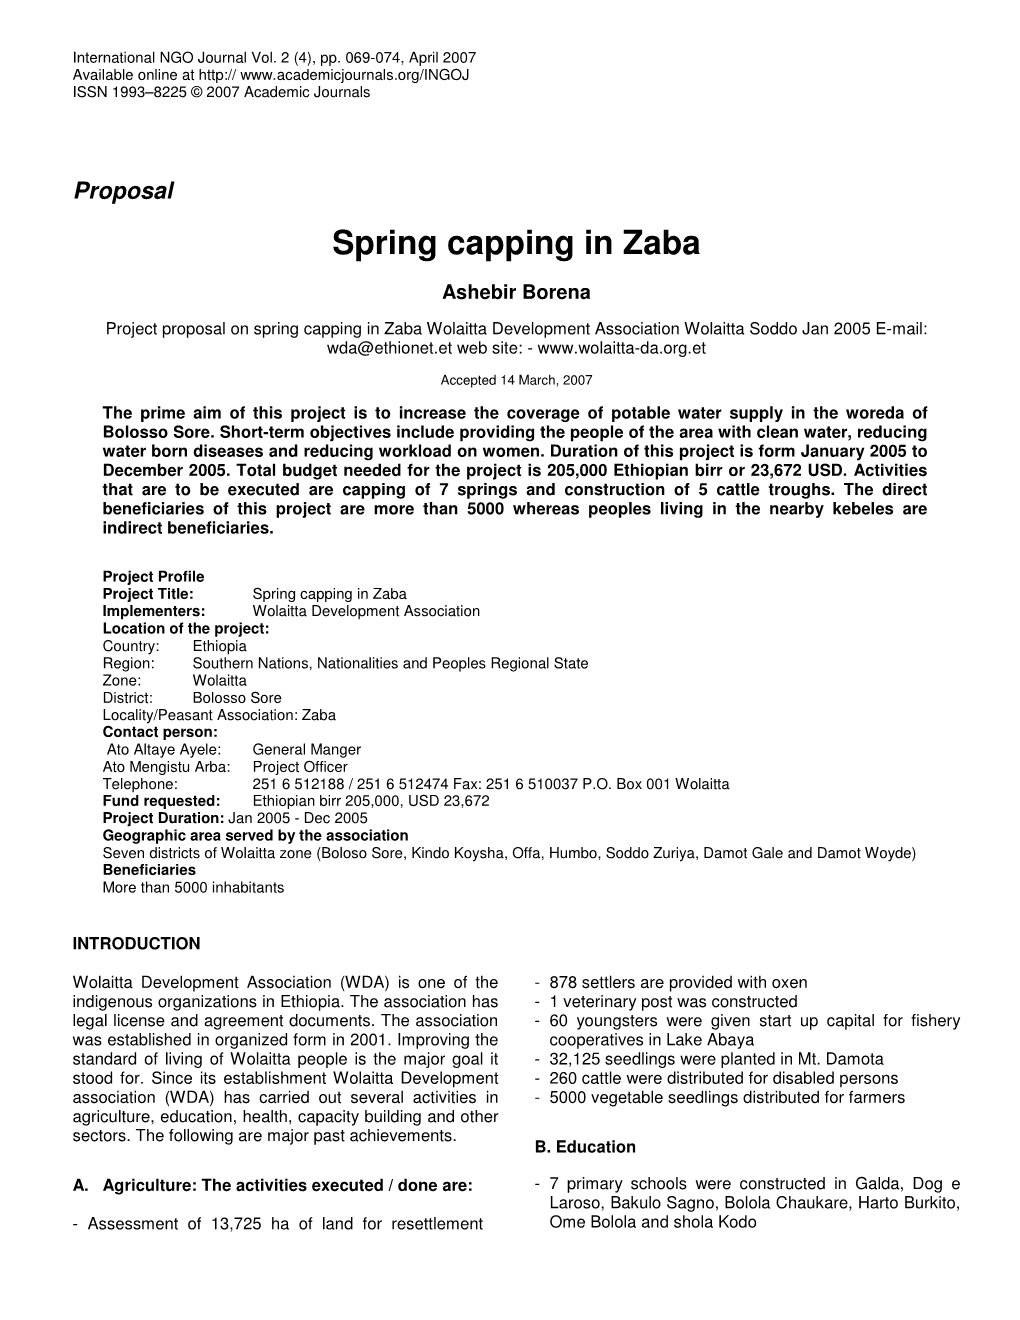 Spring Capping in Zaba